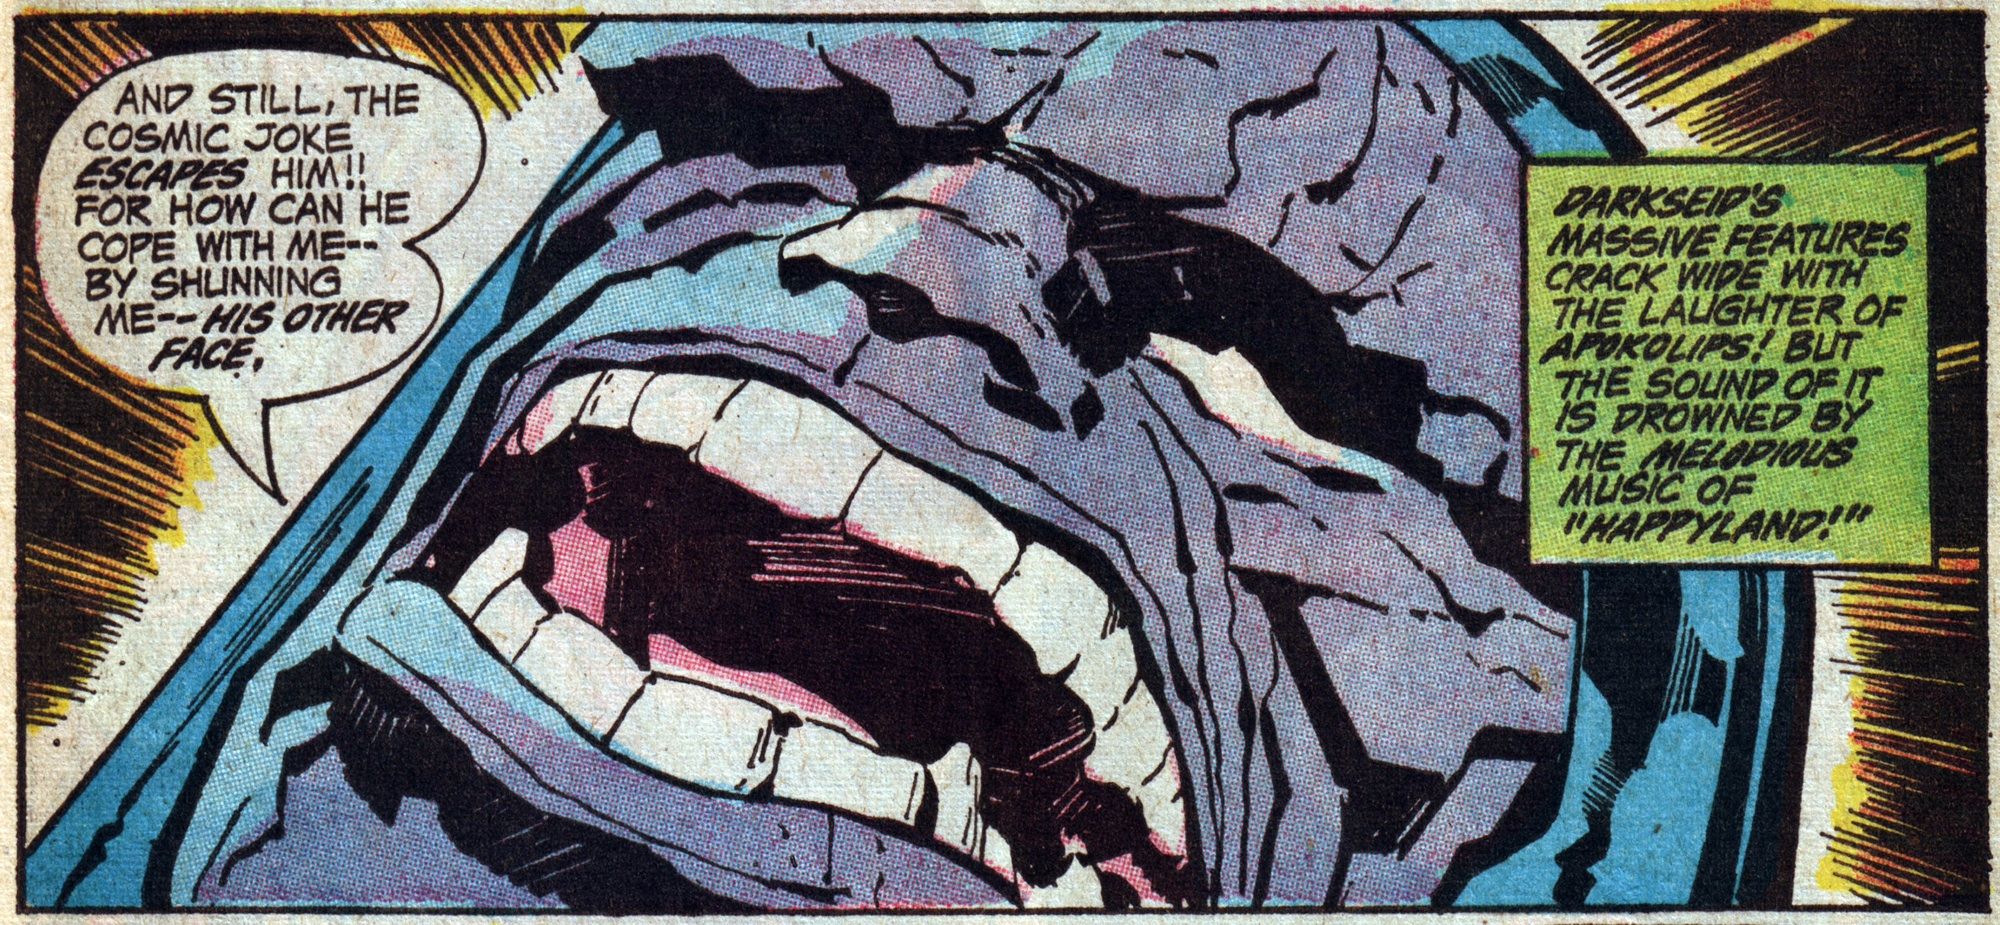 Darkseid laughs